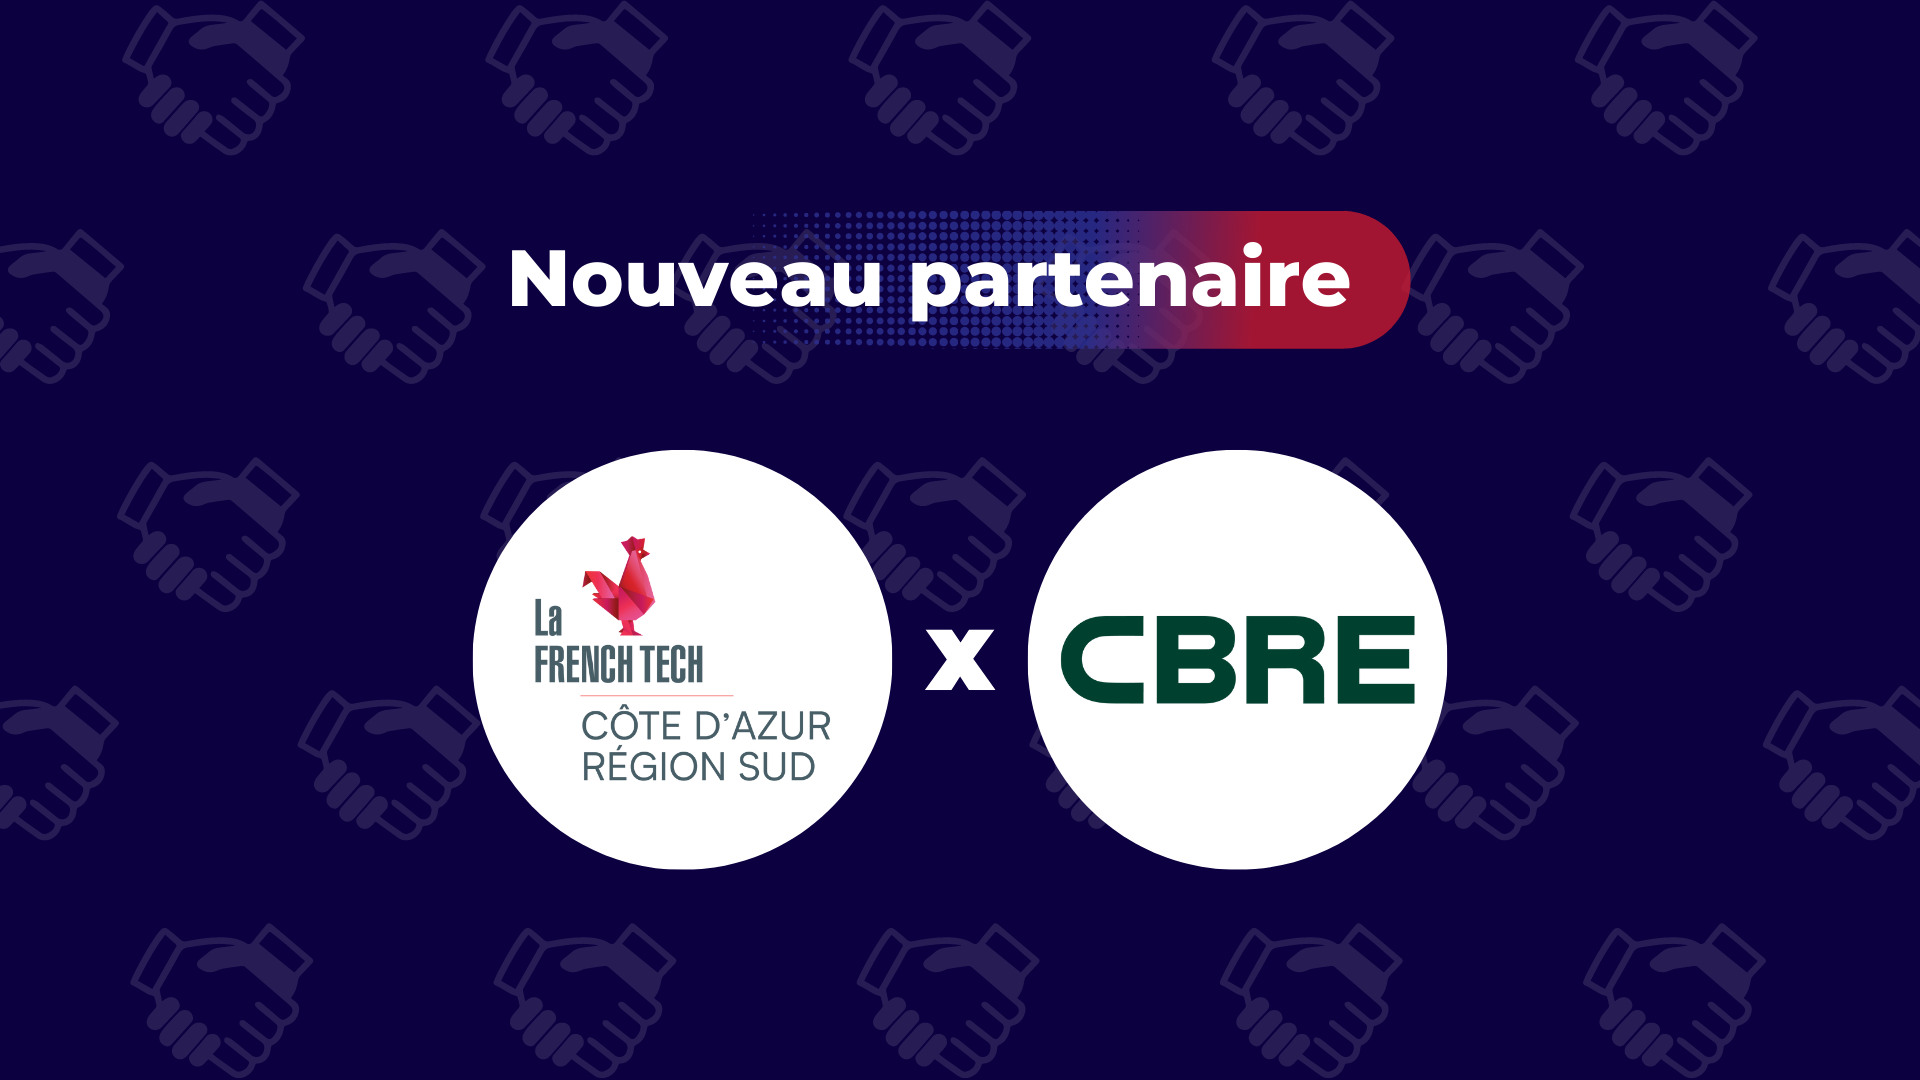 Nouveau partenaire CBRE France